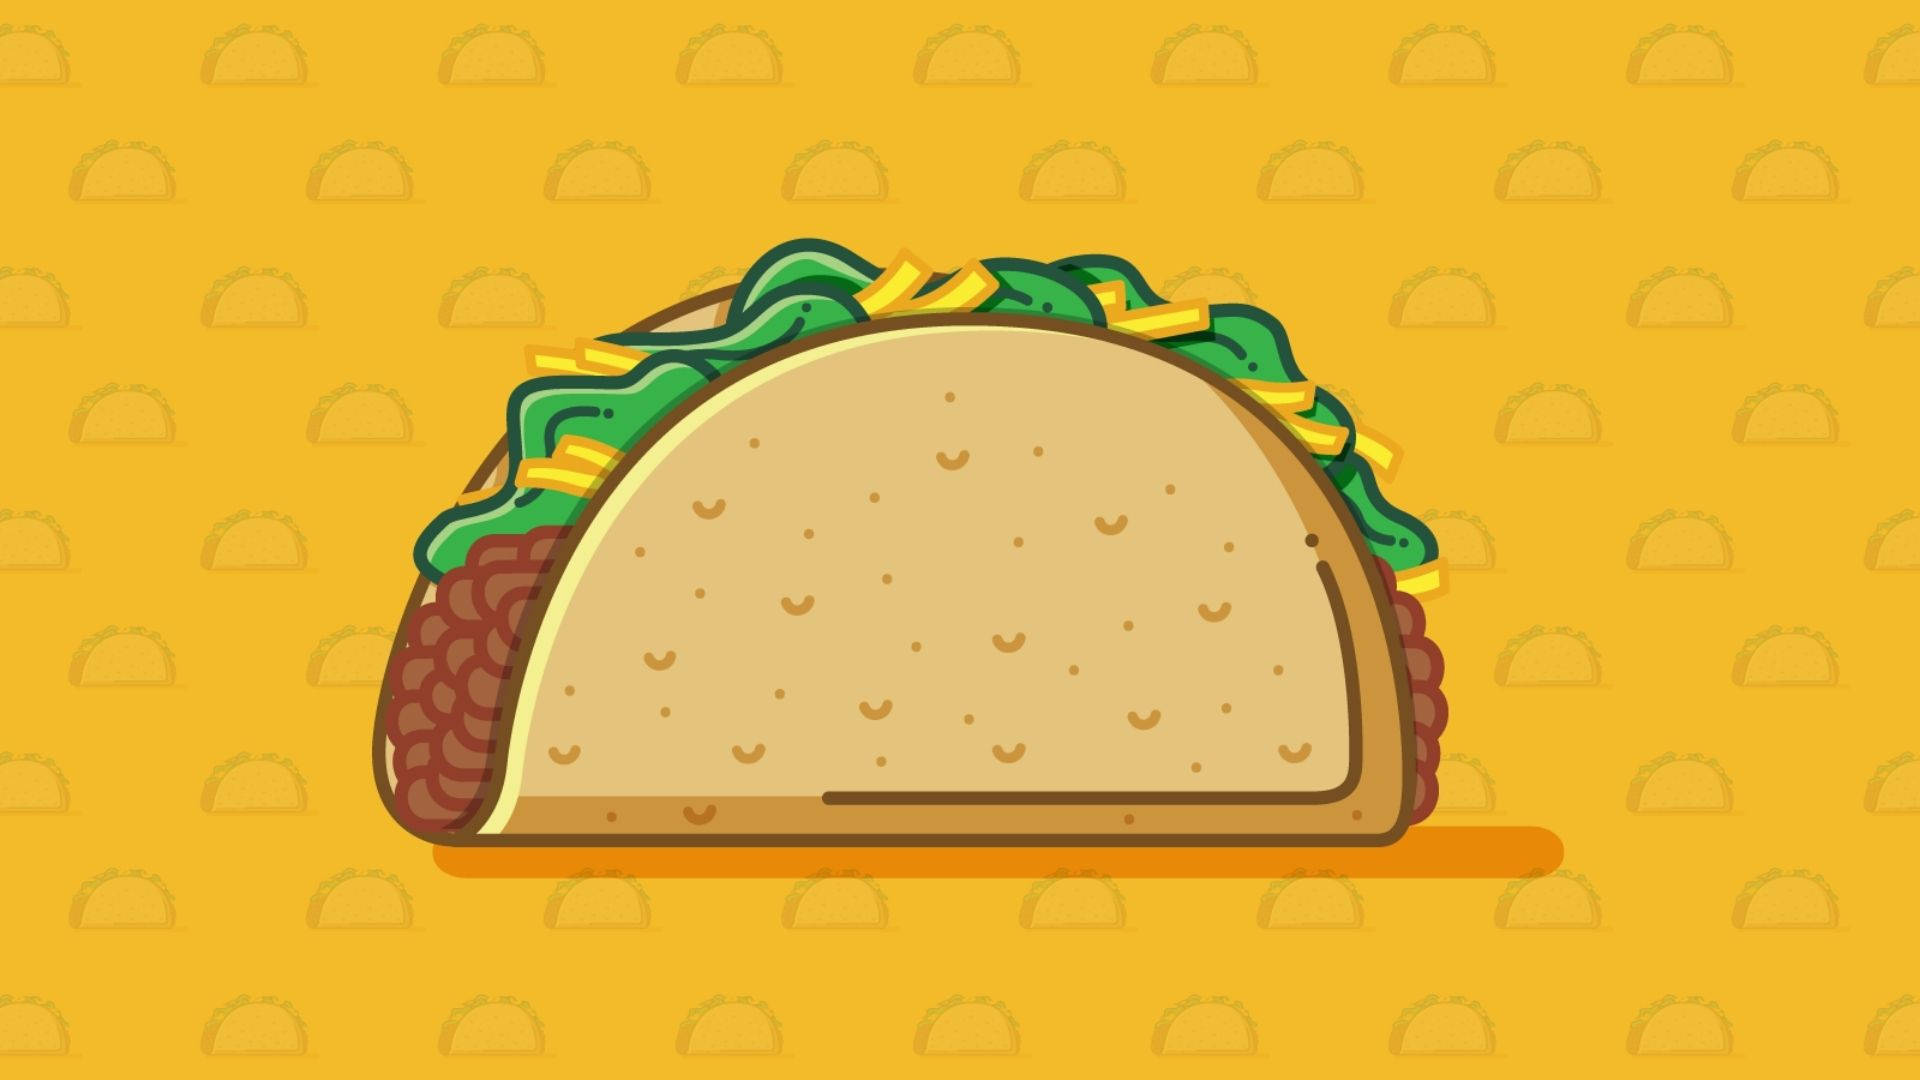 Animated Giant Taco Background